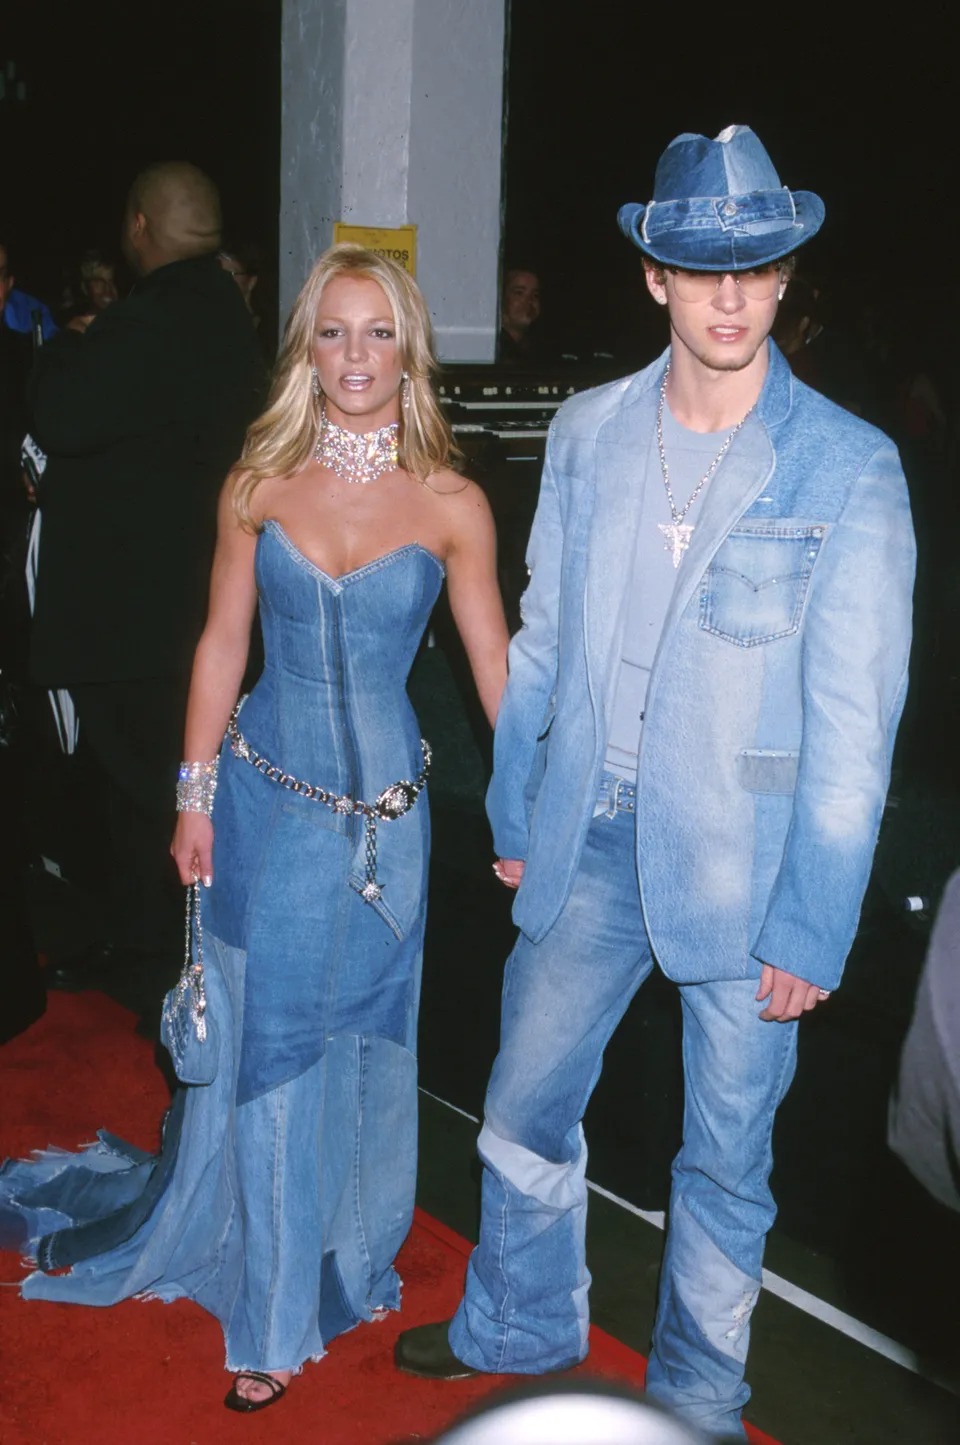 Tại American Music Awards 2001, cô và bạn trai Justin Timberlake xuất hiện với trang phục denim từ đầu đến chân. Phong cách cá tính của hai đã trở thành nguồn cảm hứng cho giới trẻ hiện nay.